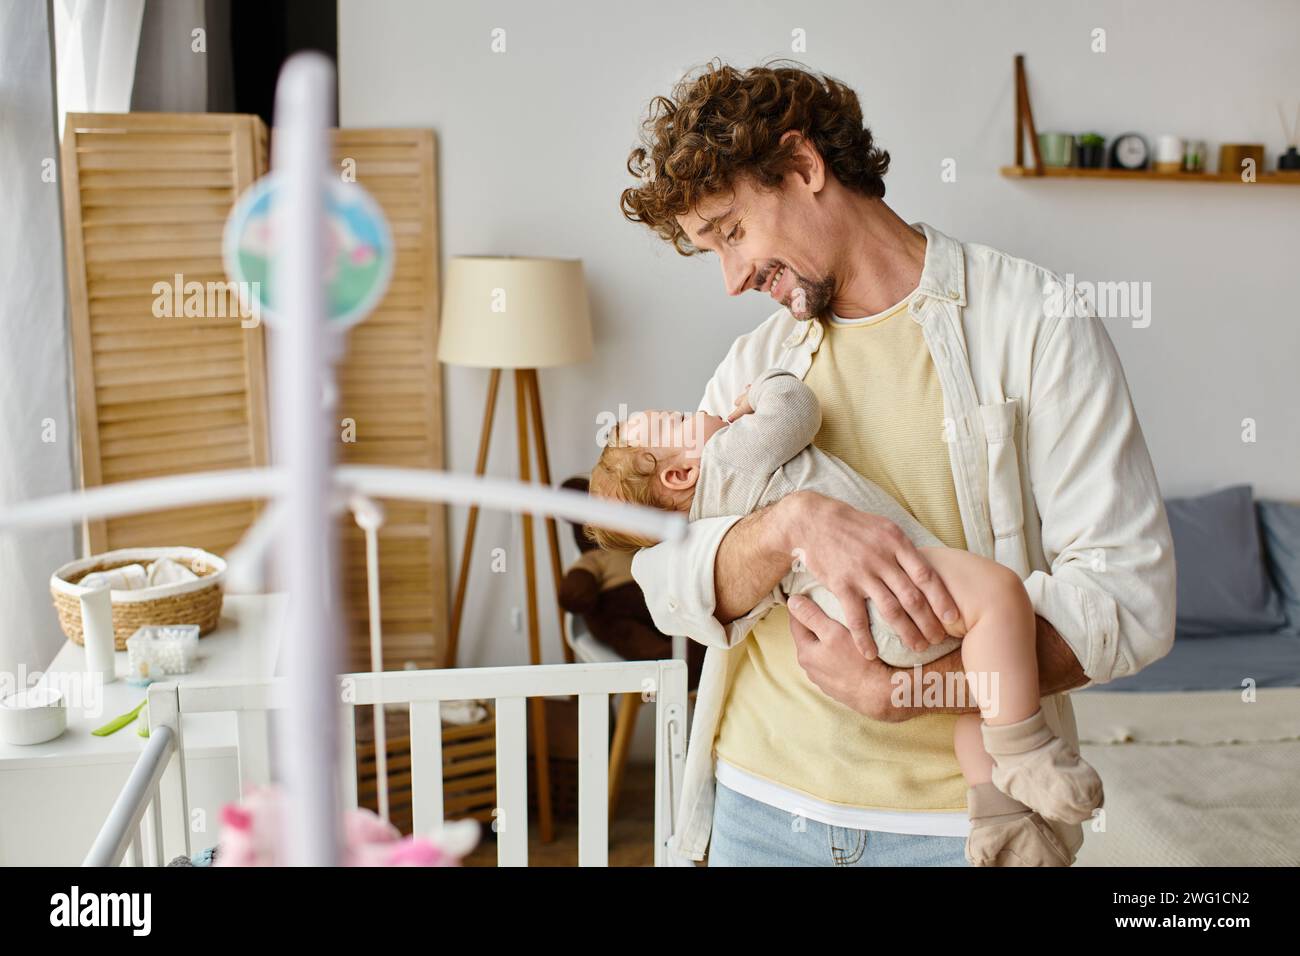 Glücklicher alleinerziehender Vater, der seinen kleinen Sohn in Armen in der Nähe einer Babykrippe hält, in Kinderzimmer, Vaterschaft und Liebe Stockfoto